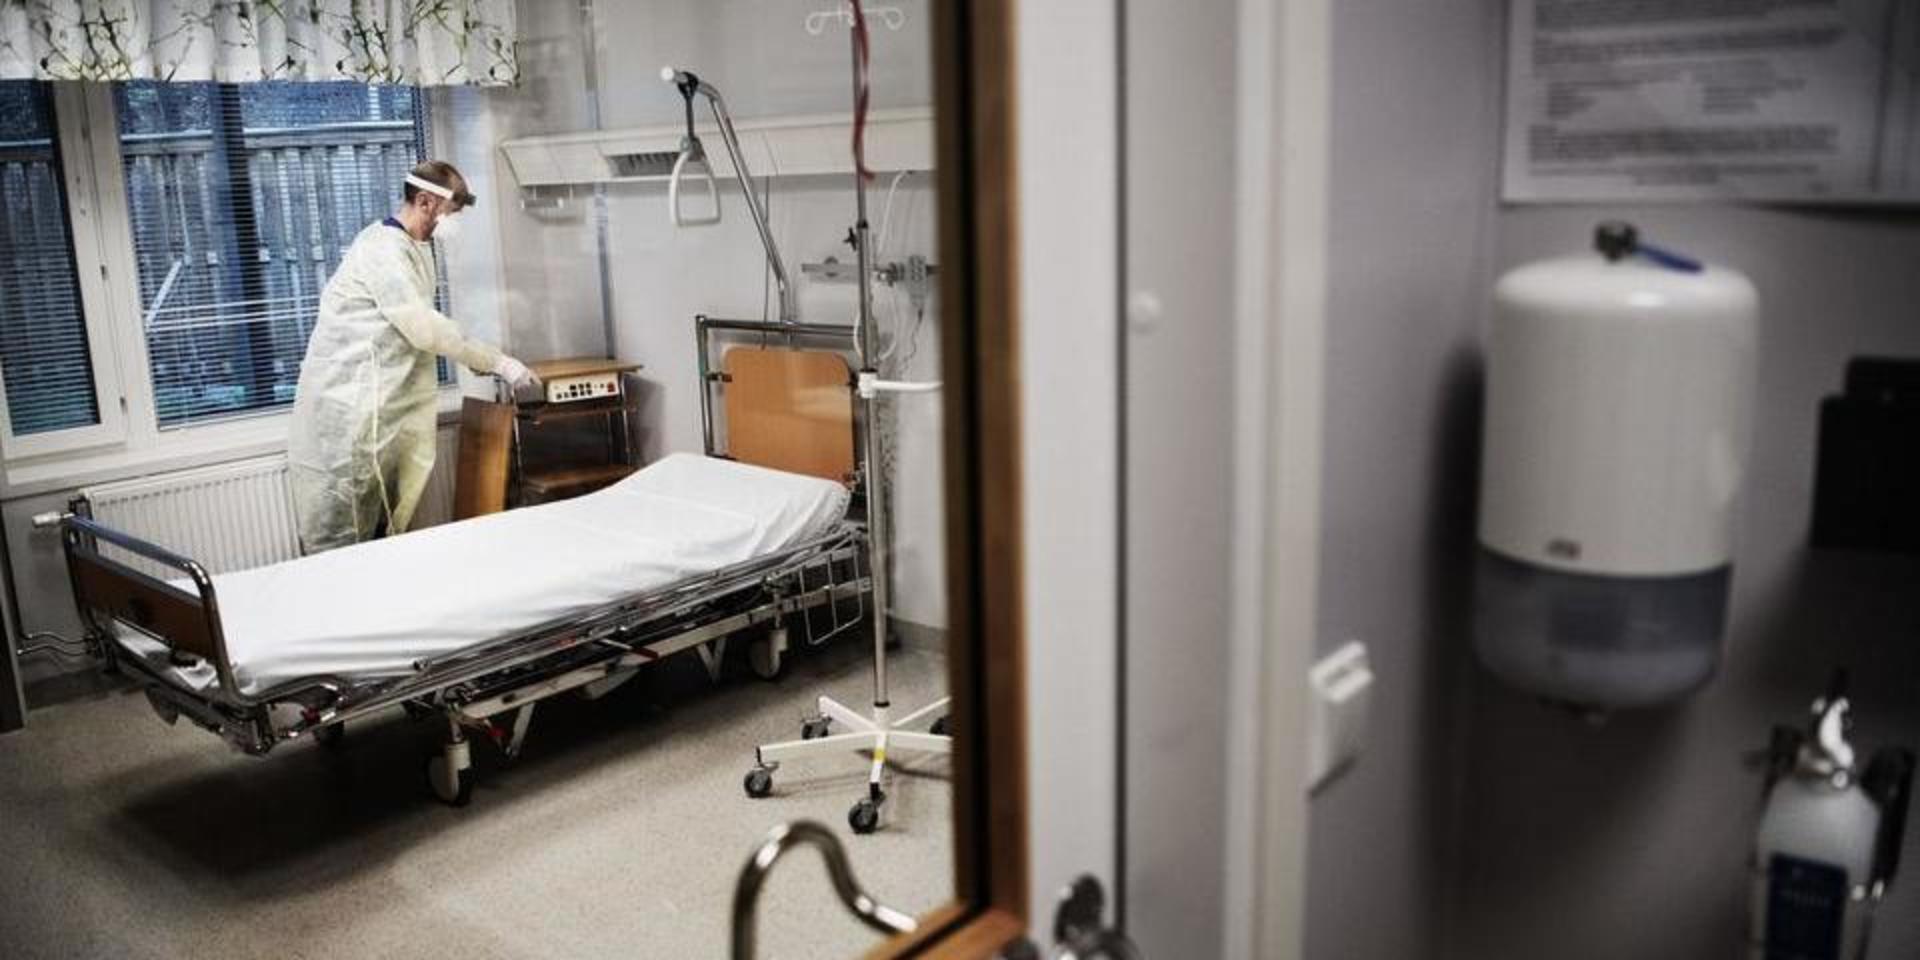 På rekordtid har Västra Götalandsregionen utarbetat nya rutiner för hur misstänkta fall av coronaviruset ska hanteras. Bland annat ska patienten placeras i ett eget rum med stängd dörr. Här en bild från Infektionskliniken på Östra sjukhuset. 